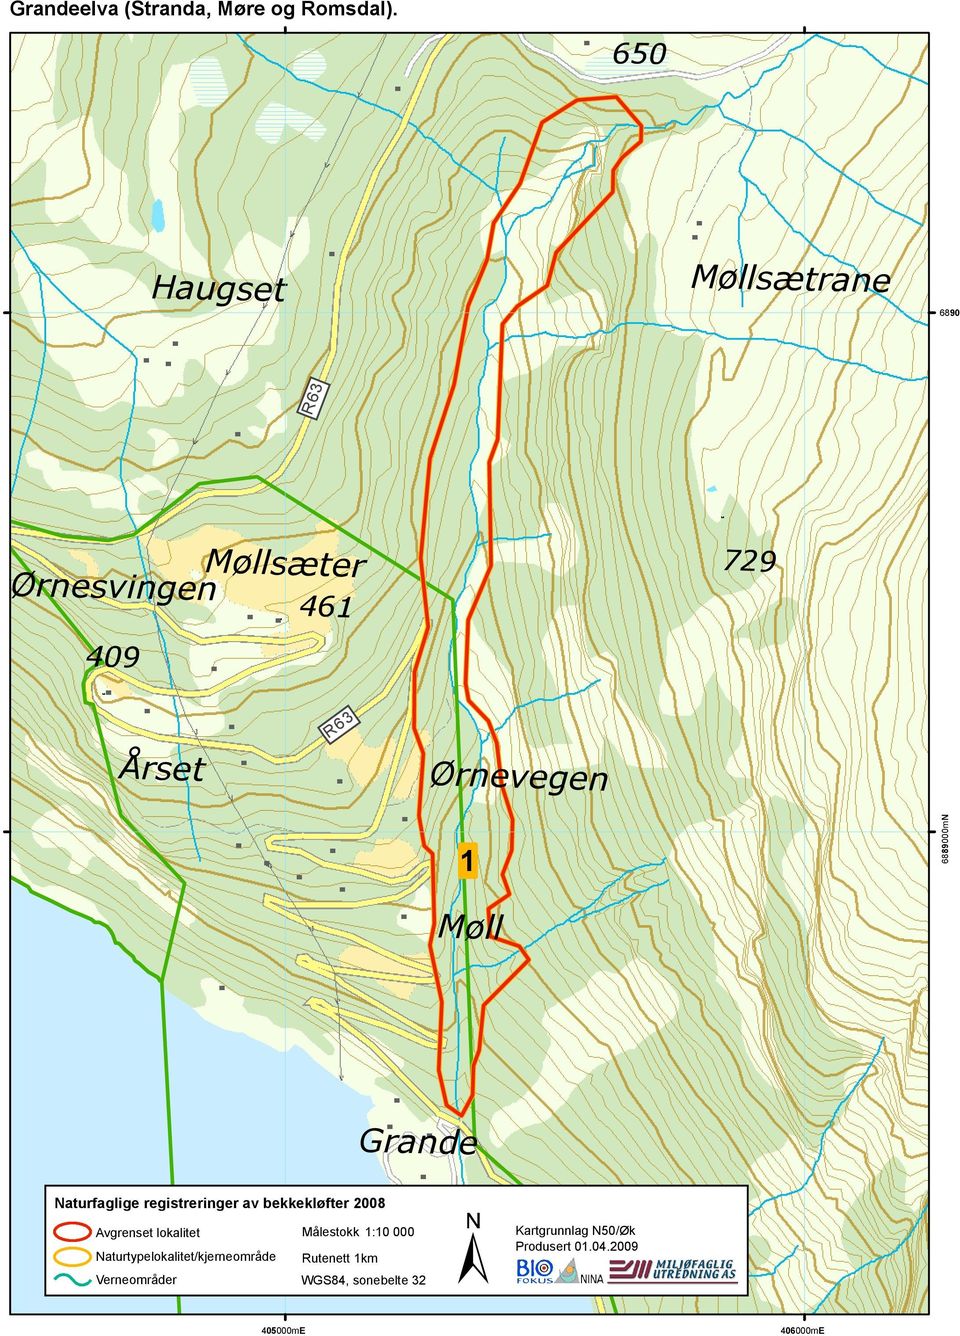 Ørnevegen 1 6889000mN Møll Grande Naturfaglige registreringer av bekkekløfter 2008 R60 Avgrenset